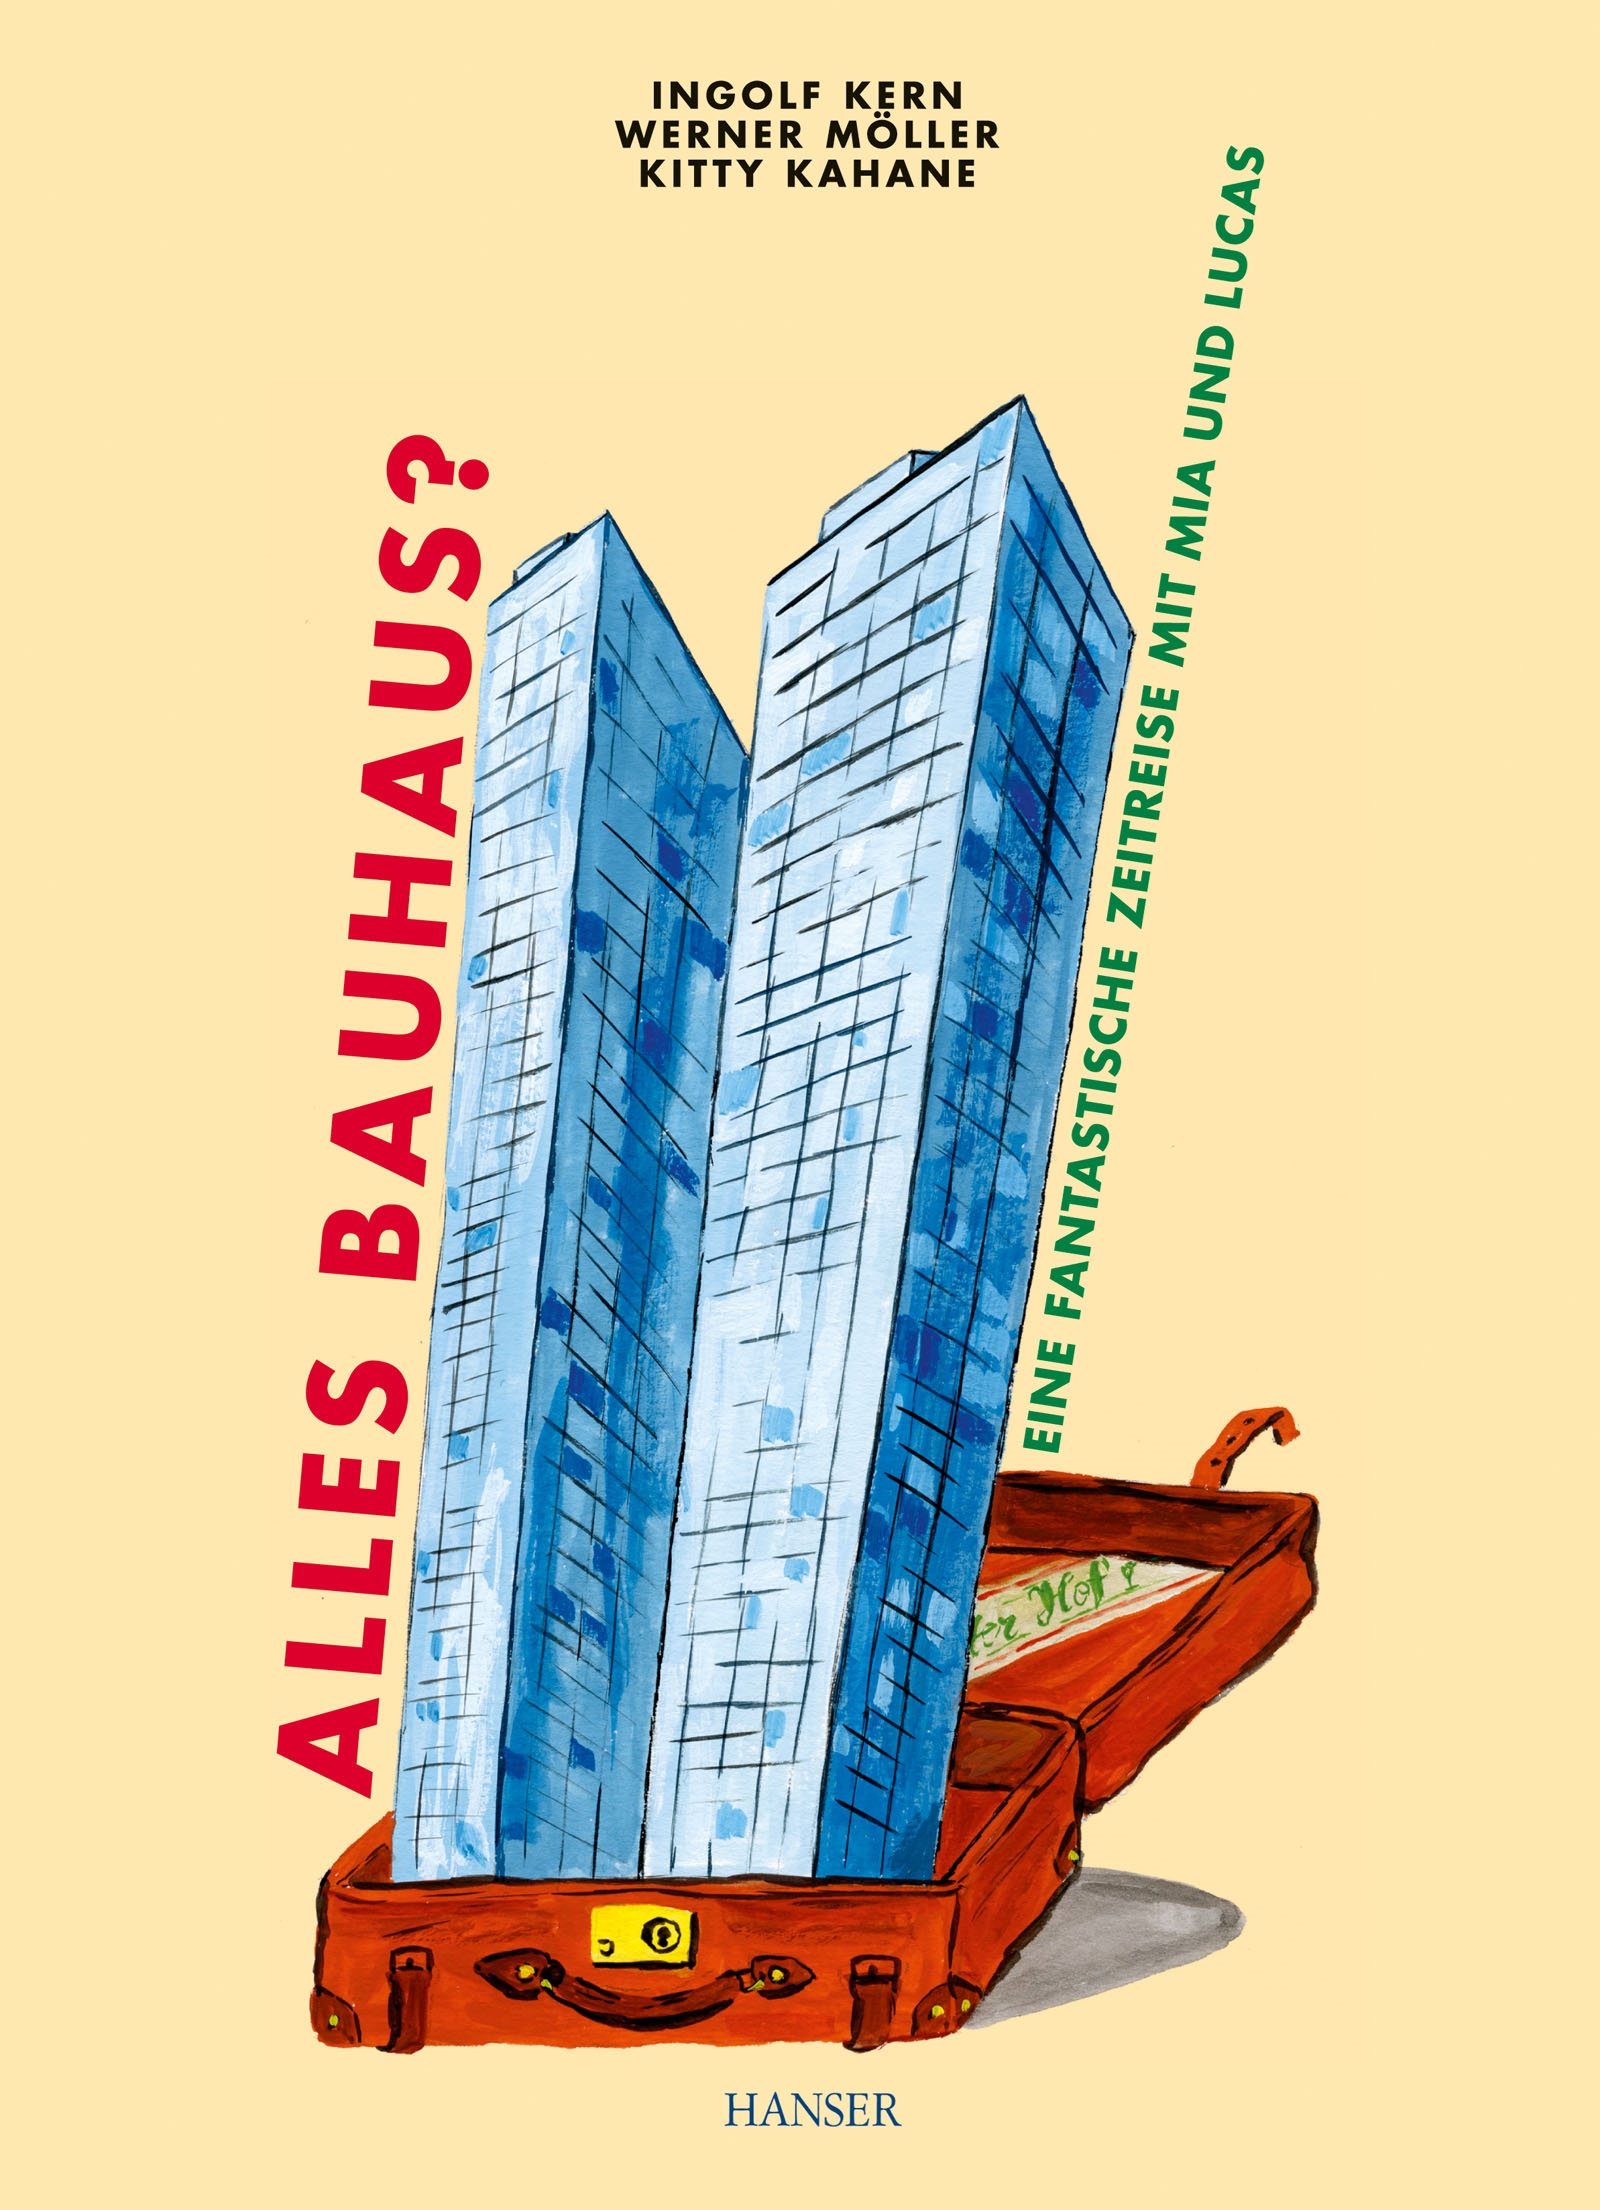 Is Everything Bauhaus?